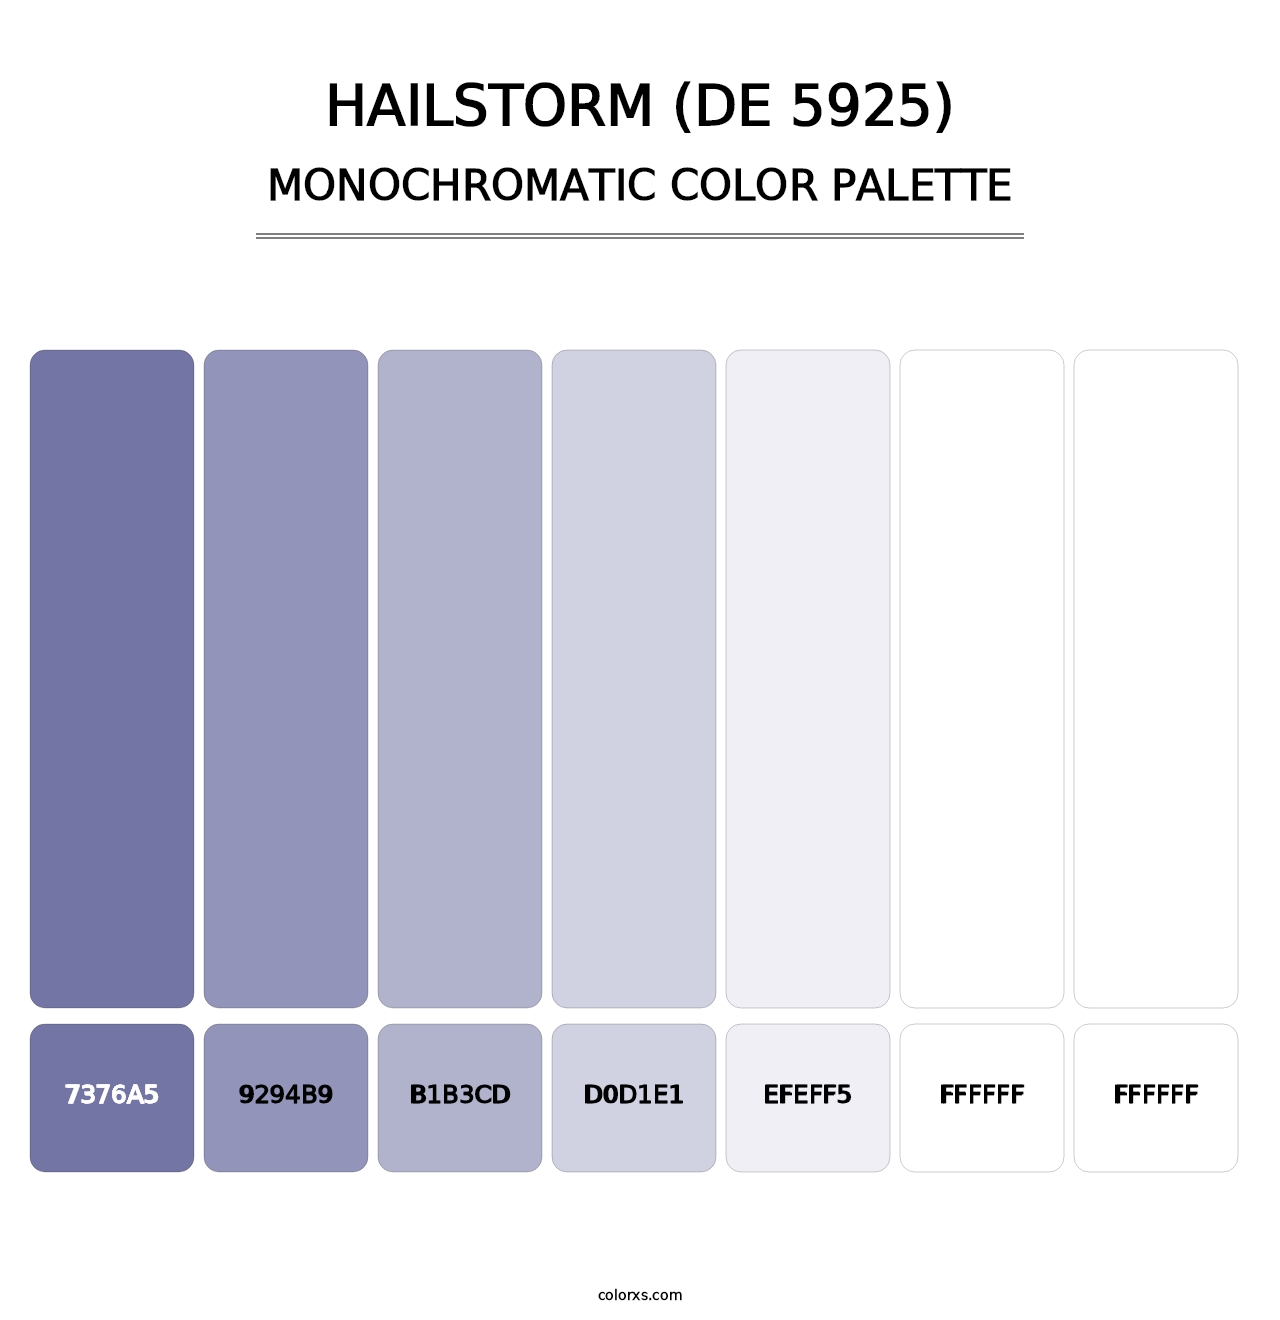 Hailstorm (DE 5925) - Monochromatic Color Palette